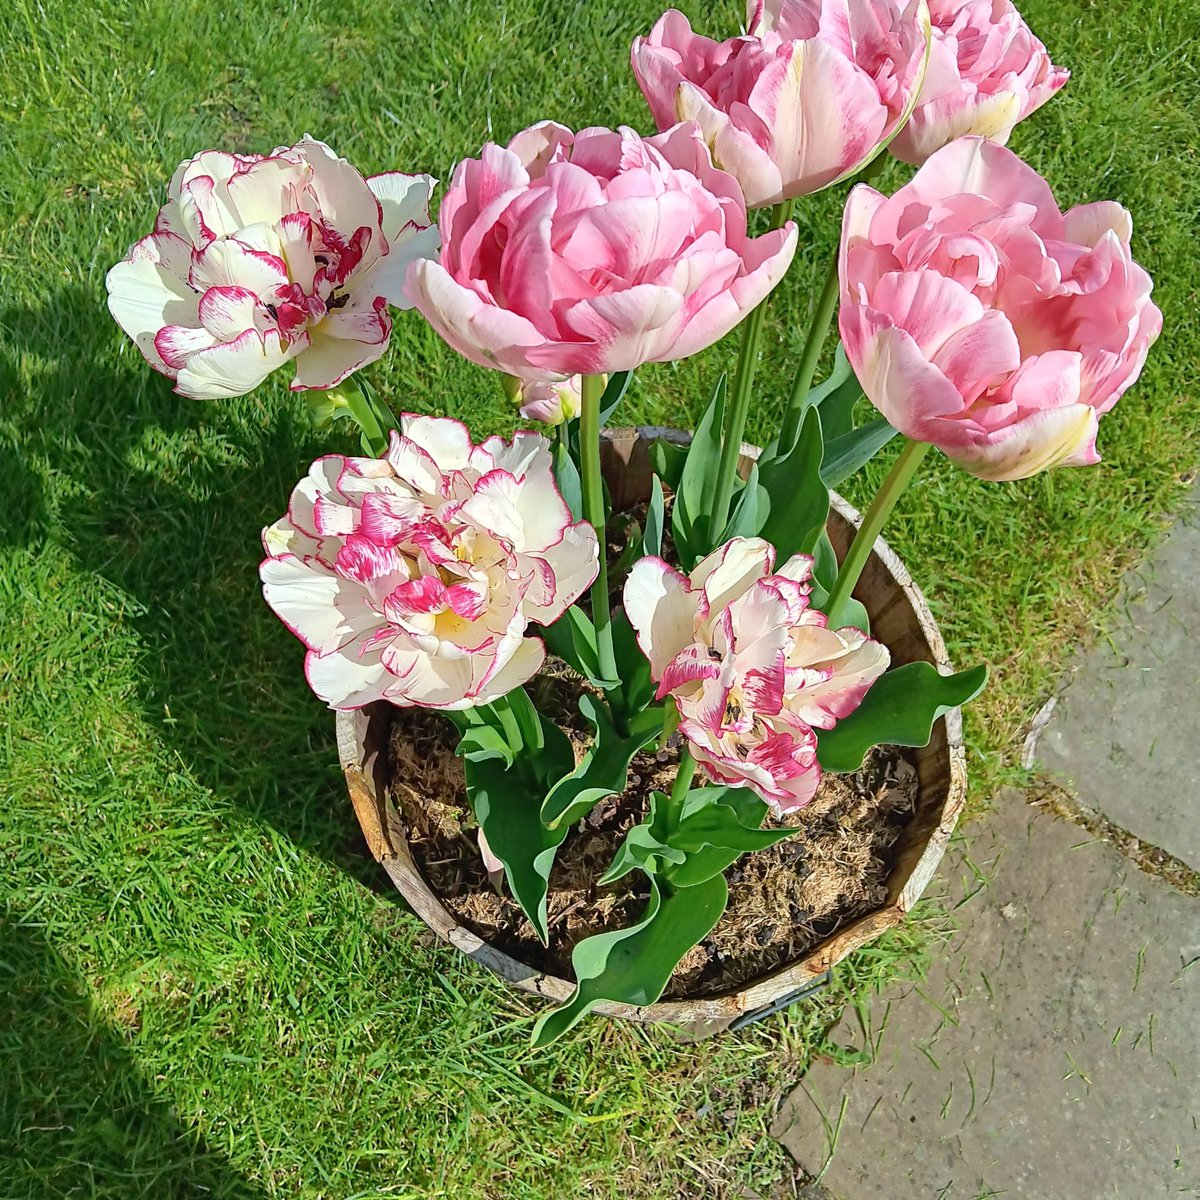 Stunning tulips 💜